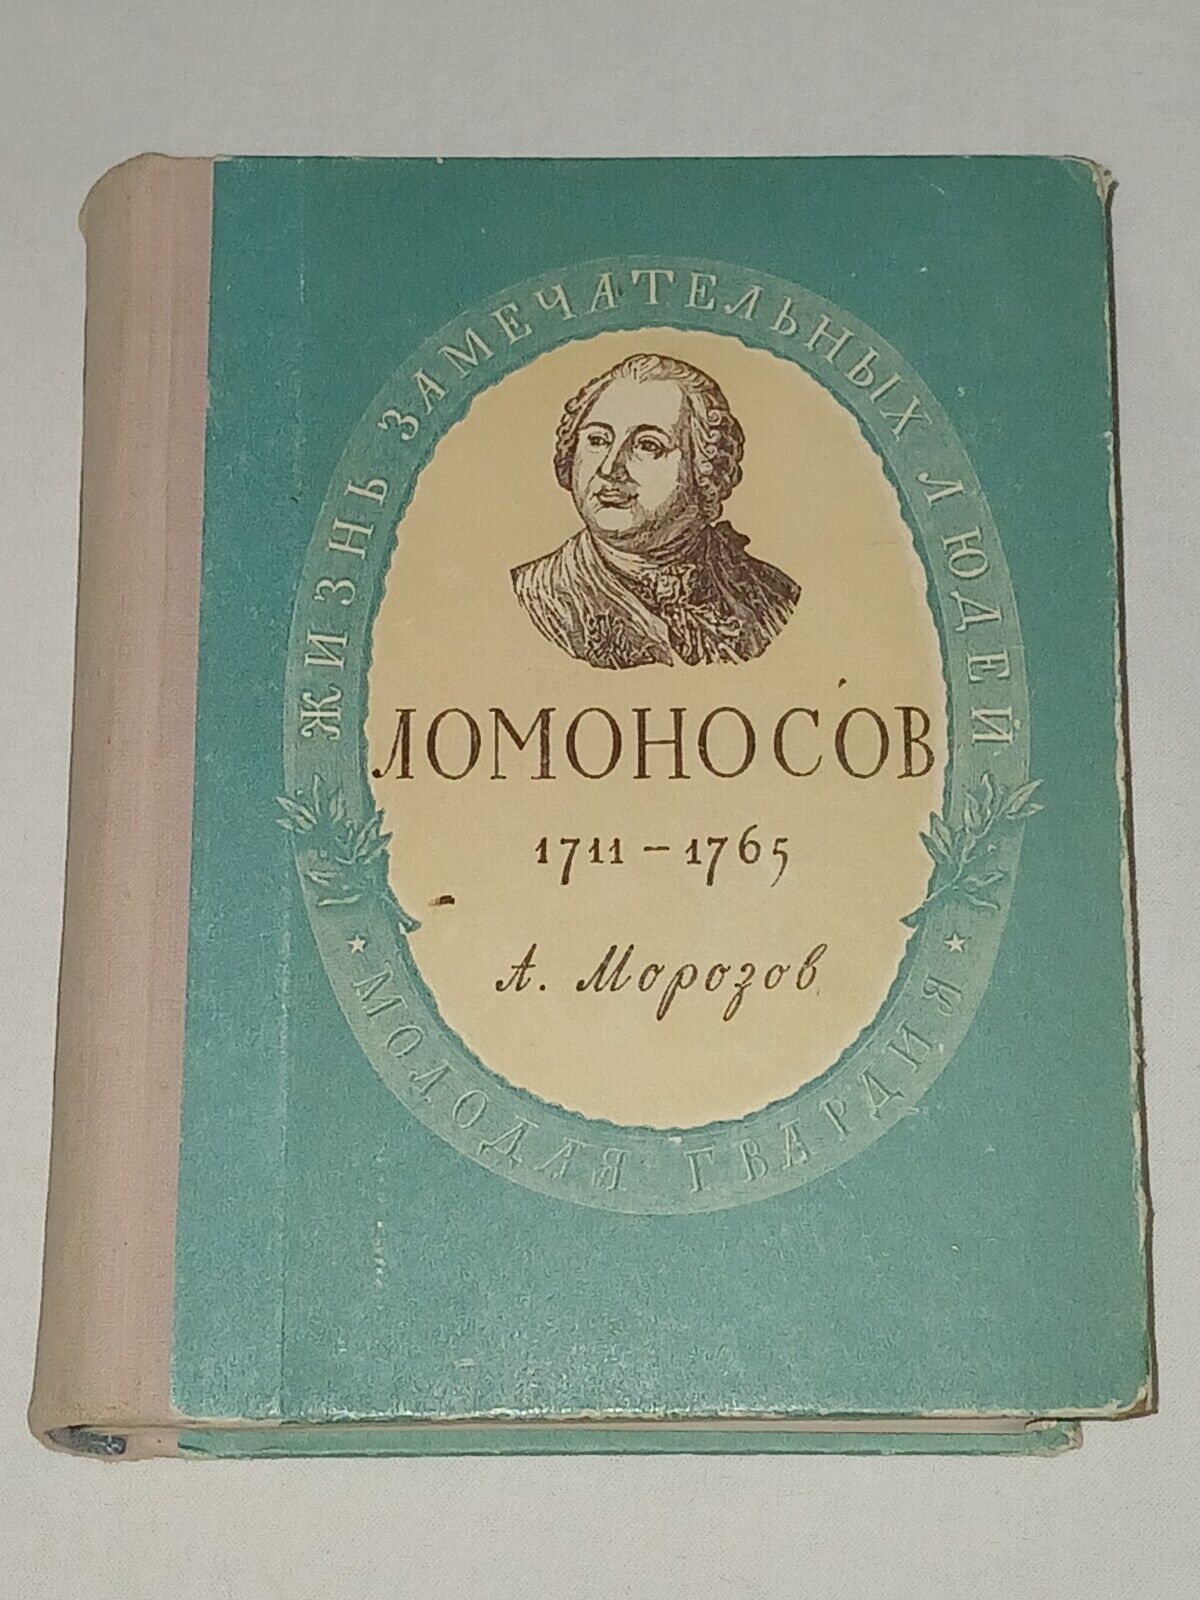 1955 M. V. Lomonosov 1711 - 1765. Vintage Soviet  book USSR in Russian